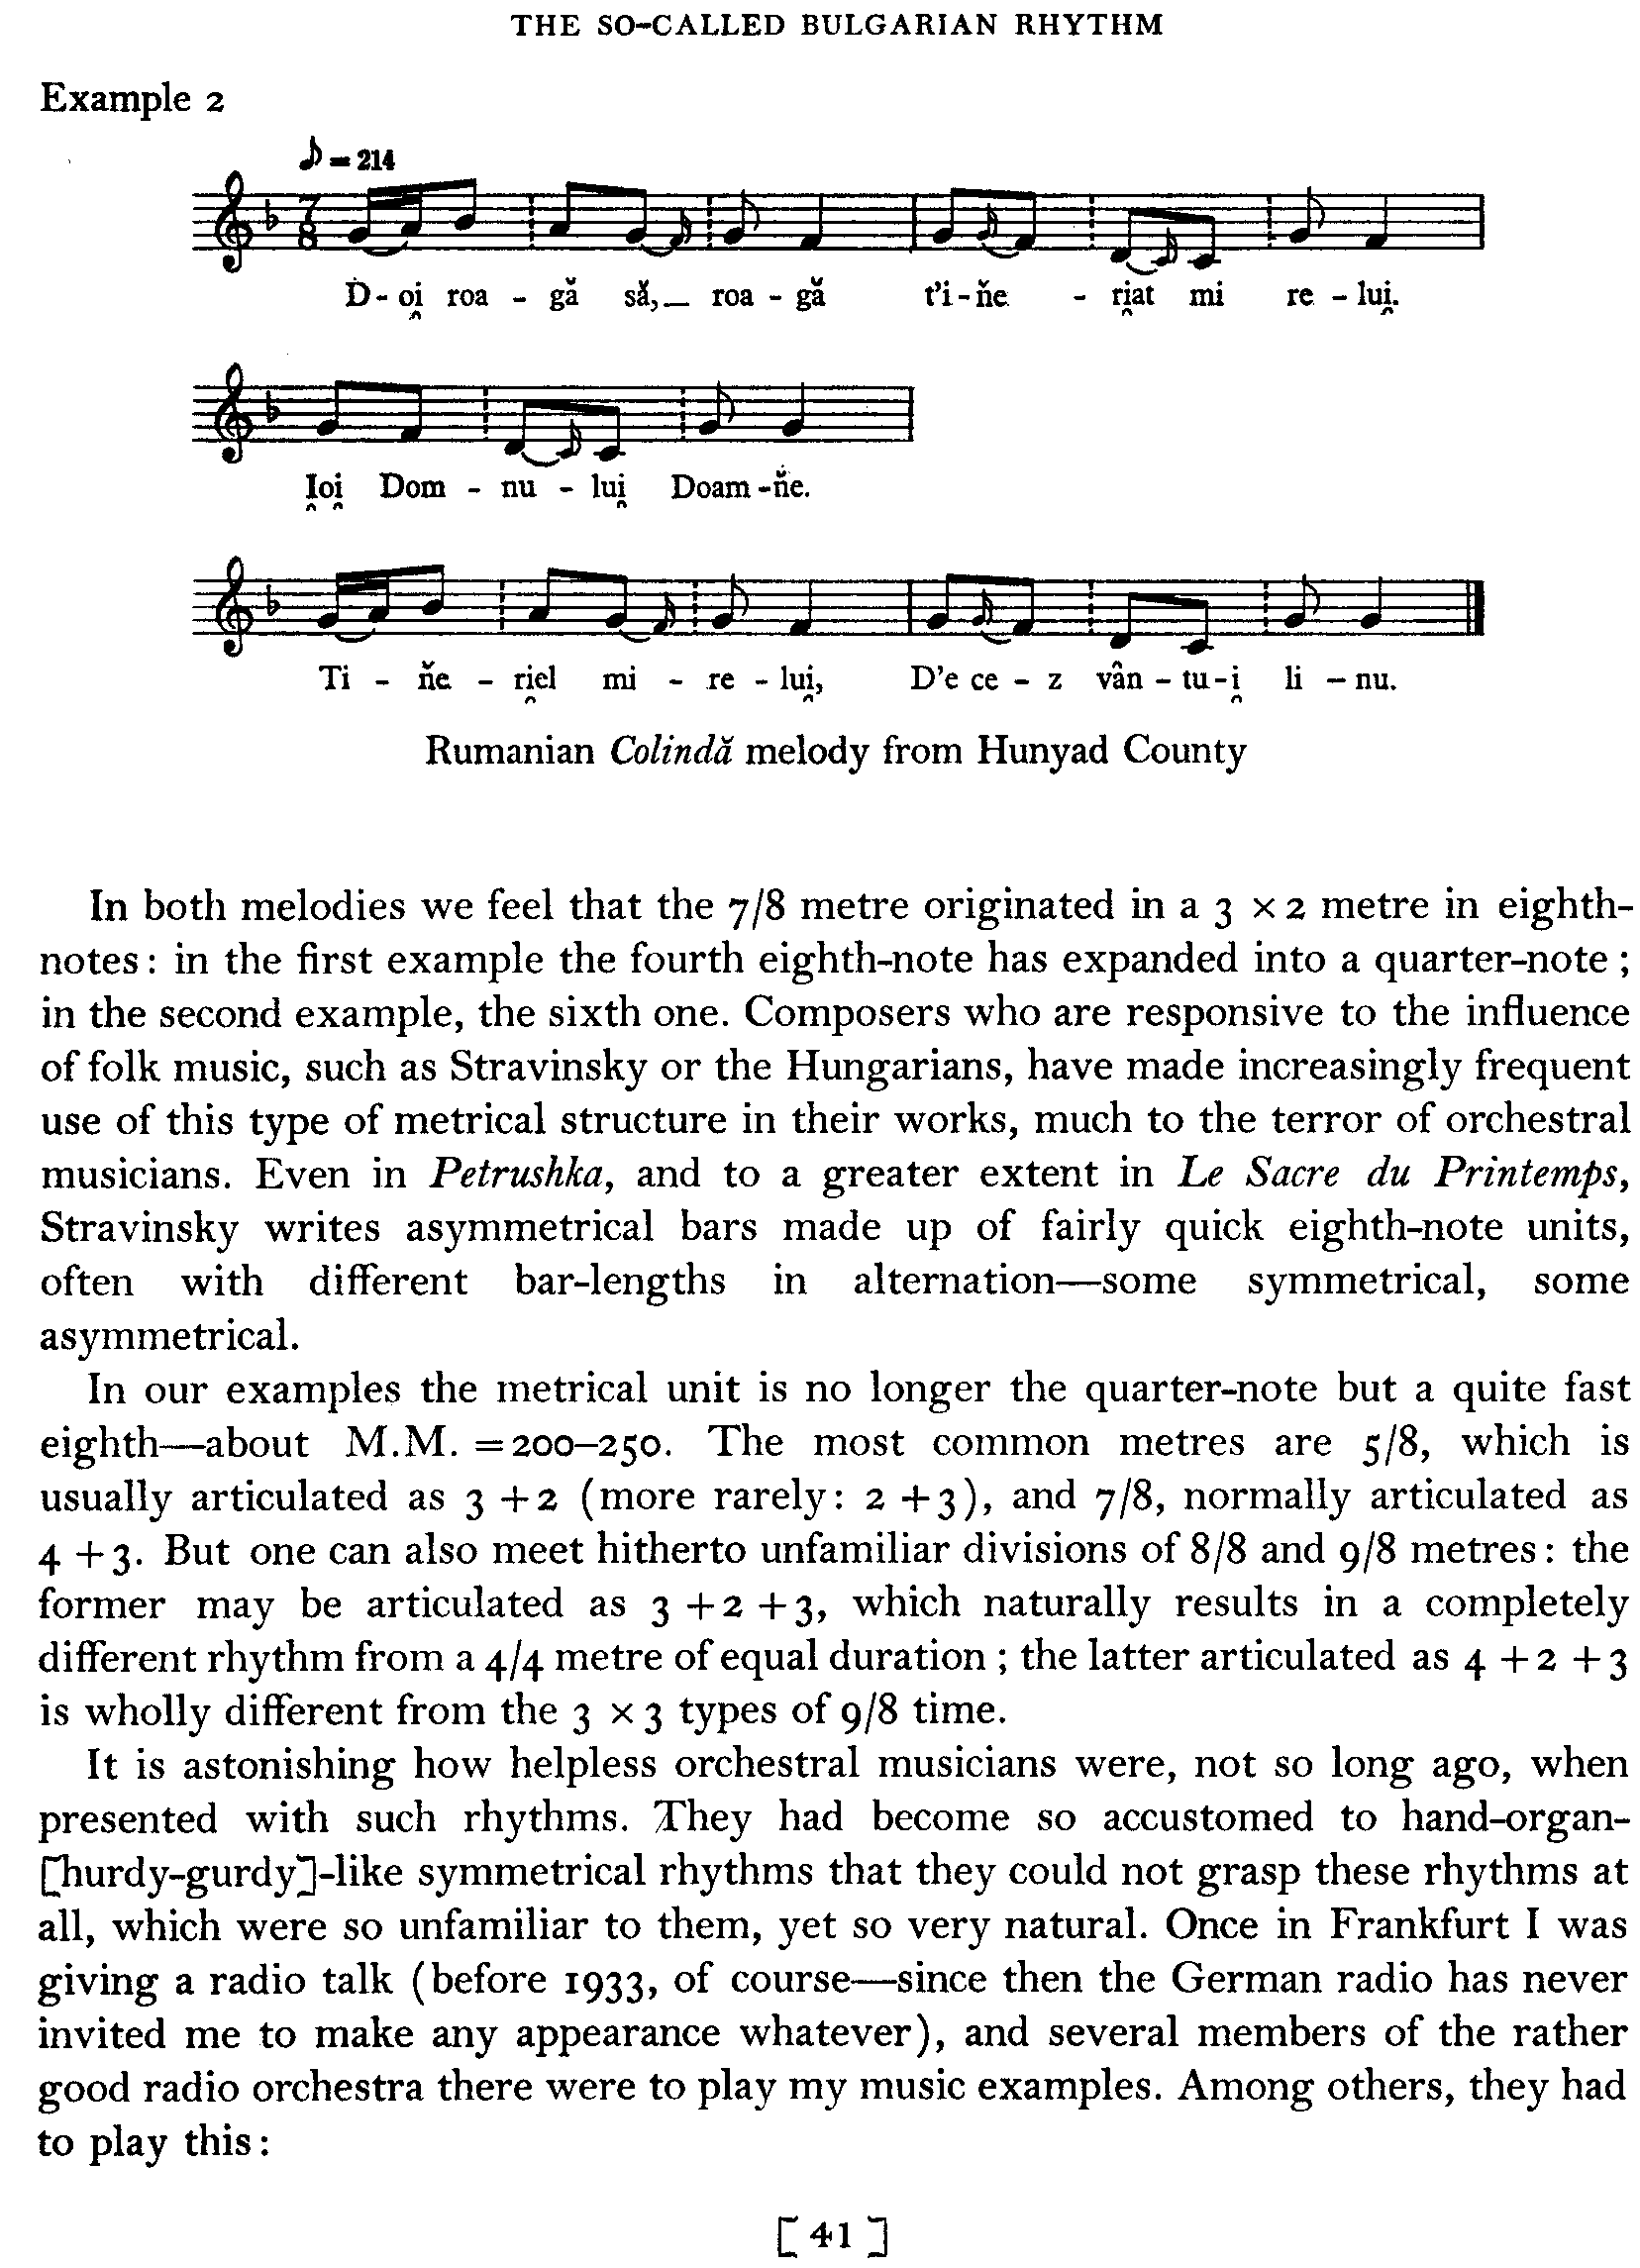 Bulgarian Rhythm - Bartok Page 41